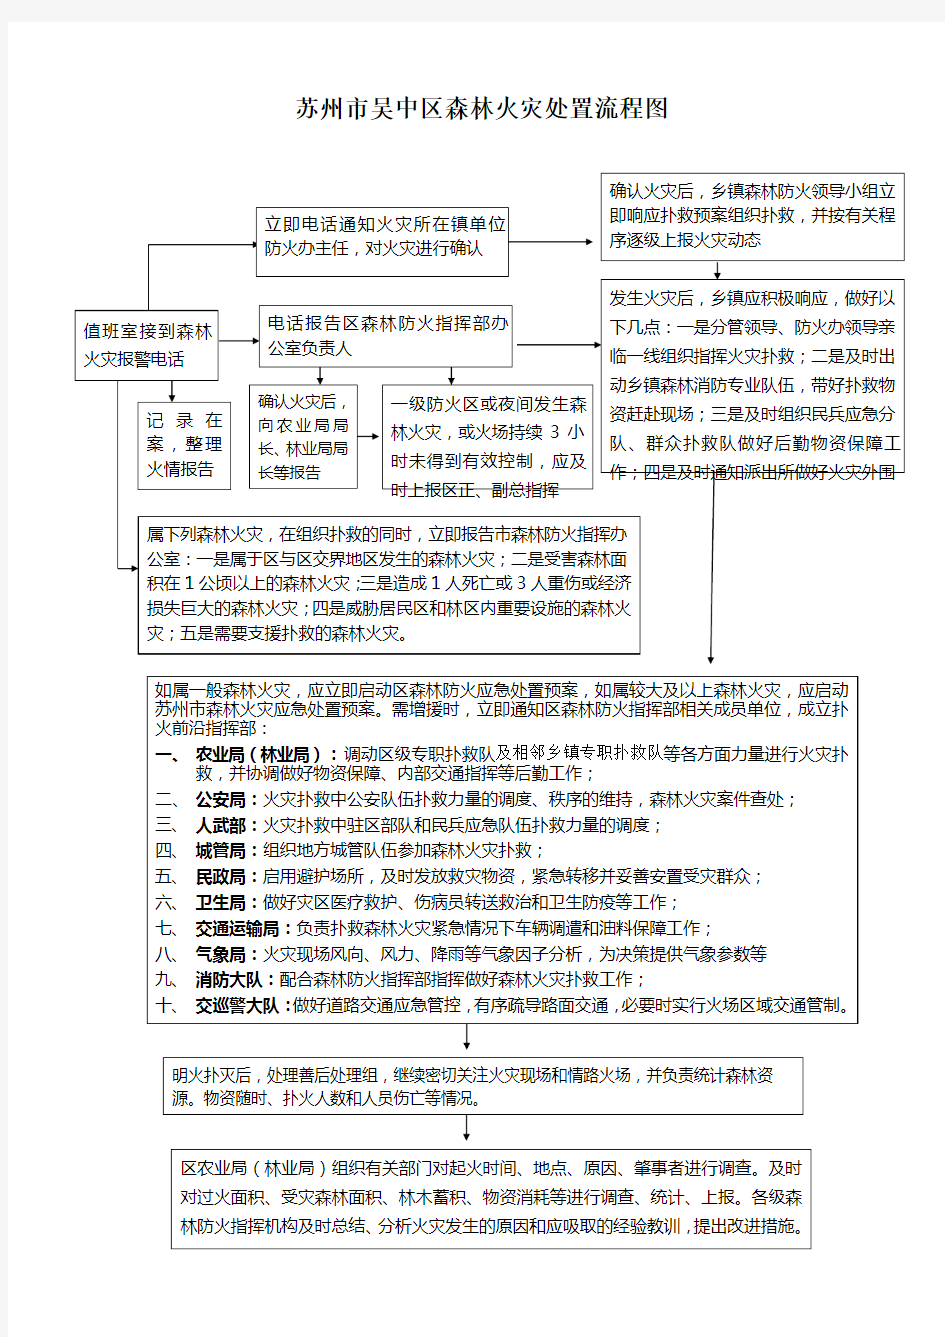 吴中区森林火灾处置流程图